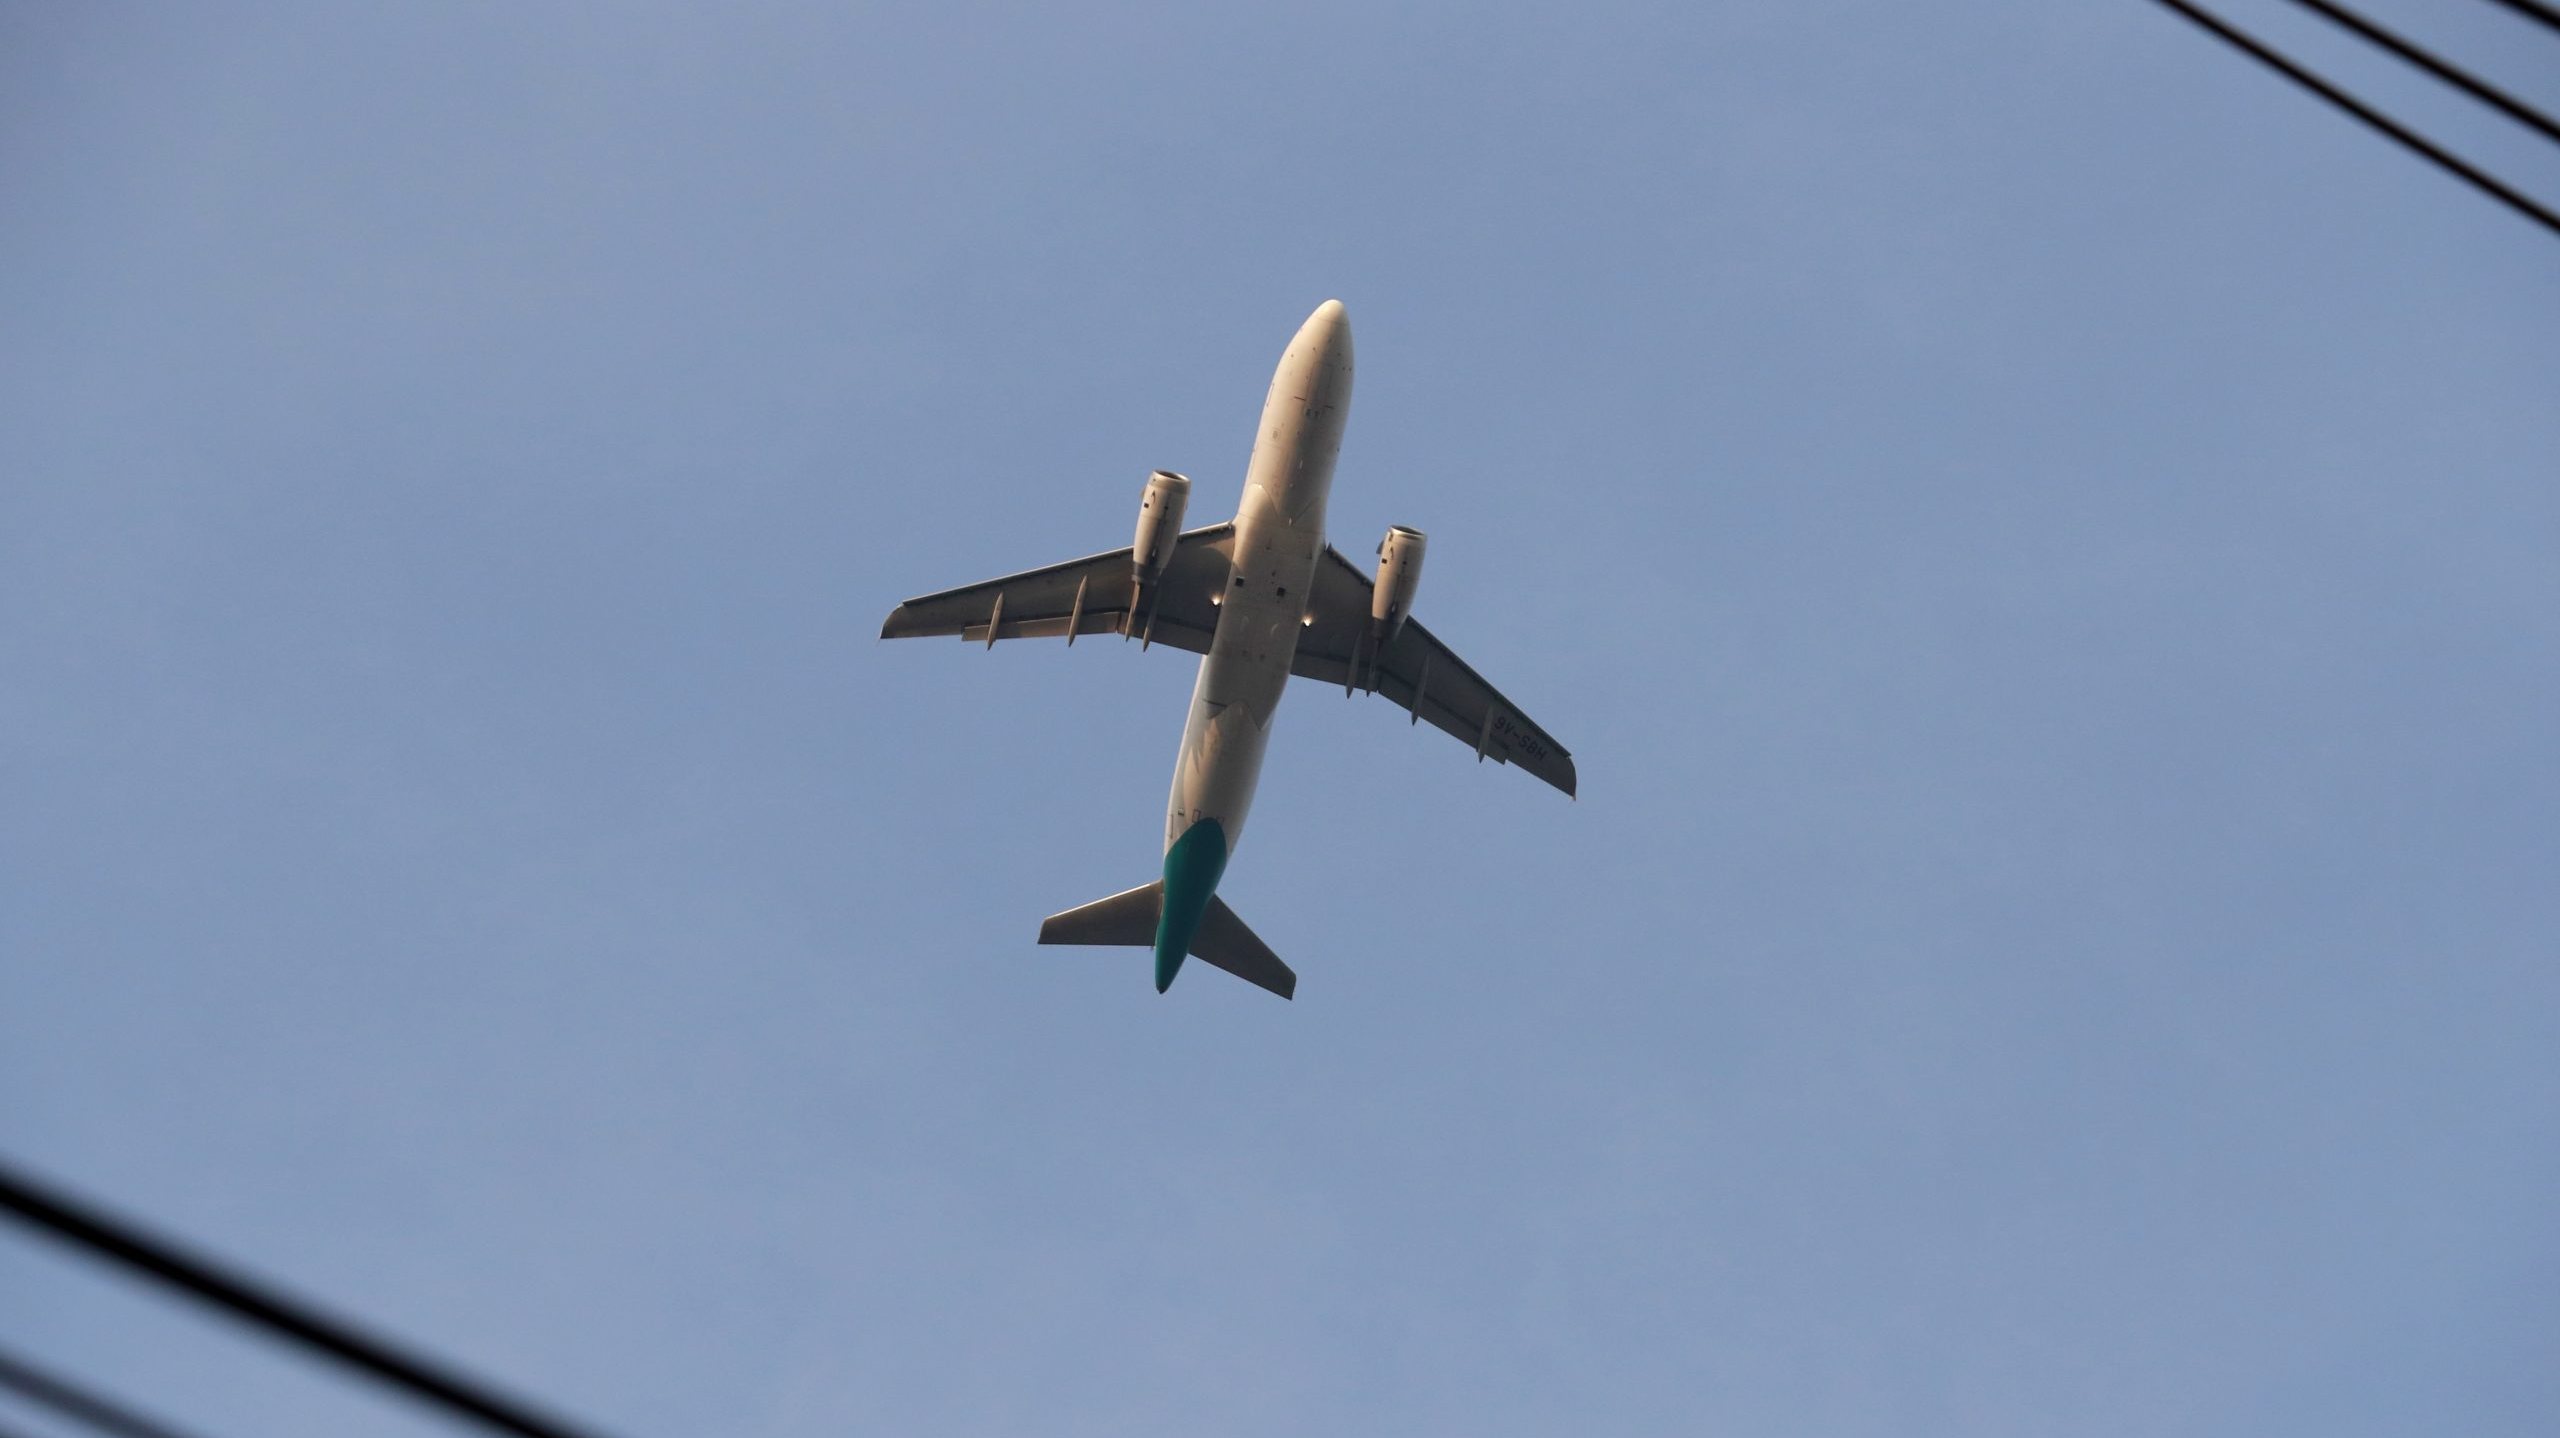 A taxa incide sobre títulos de transporte aéreo comercial de passageiros com partida dos aeroportos e aeródromos situados em território português